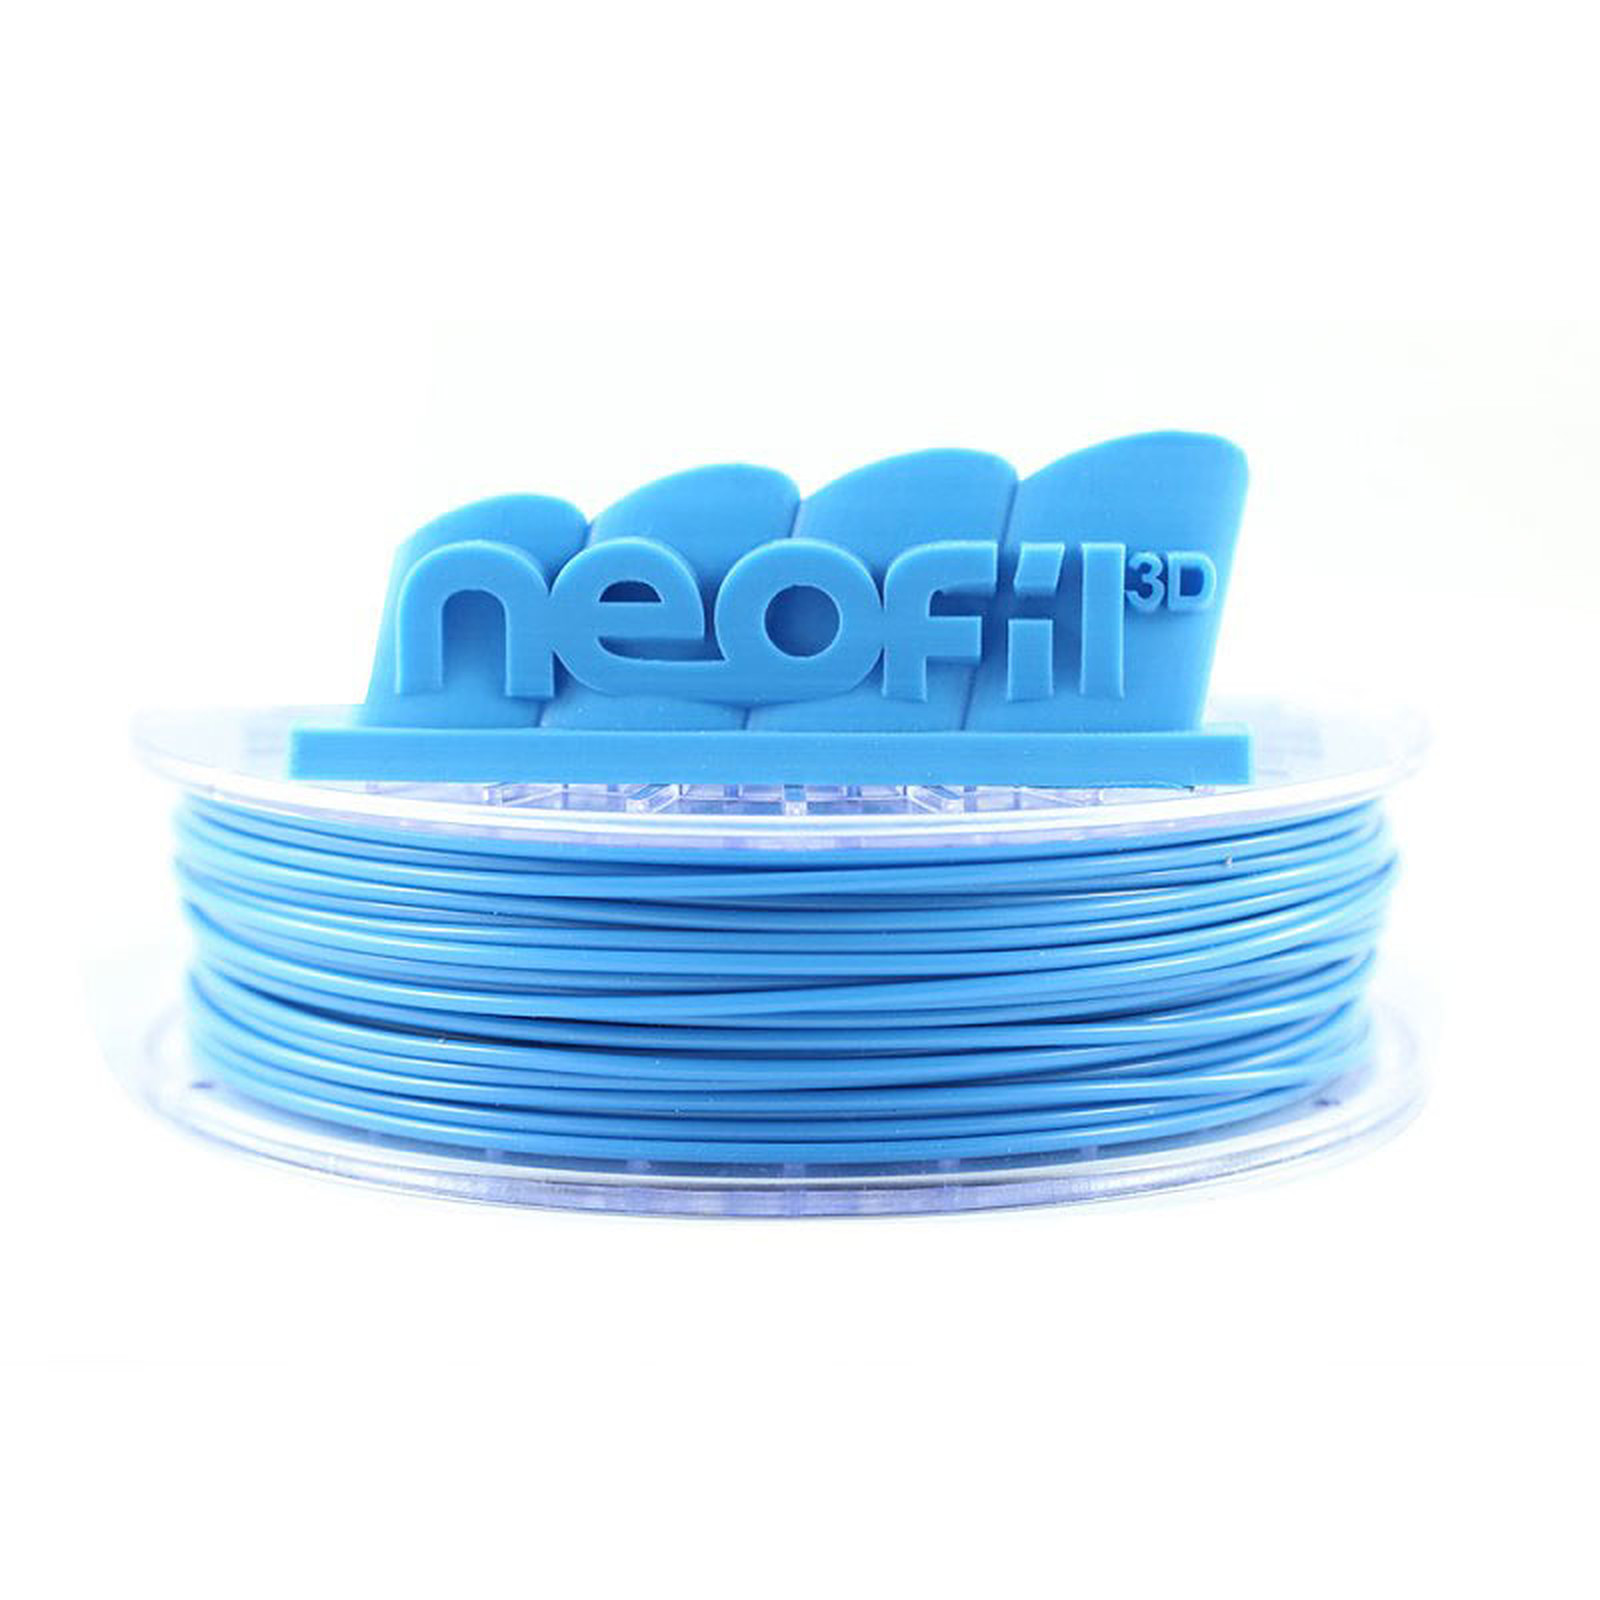 Neofil3D Bobine PLA 2.85mm 750g - Bleu Ciel - Filament 3D Neofil3D